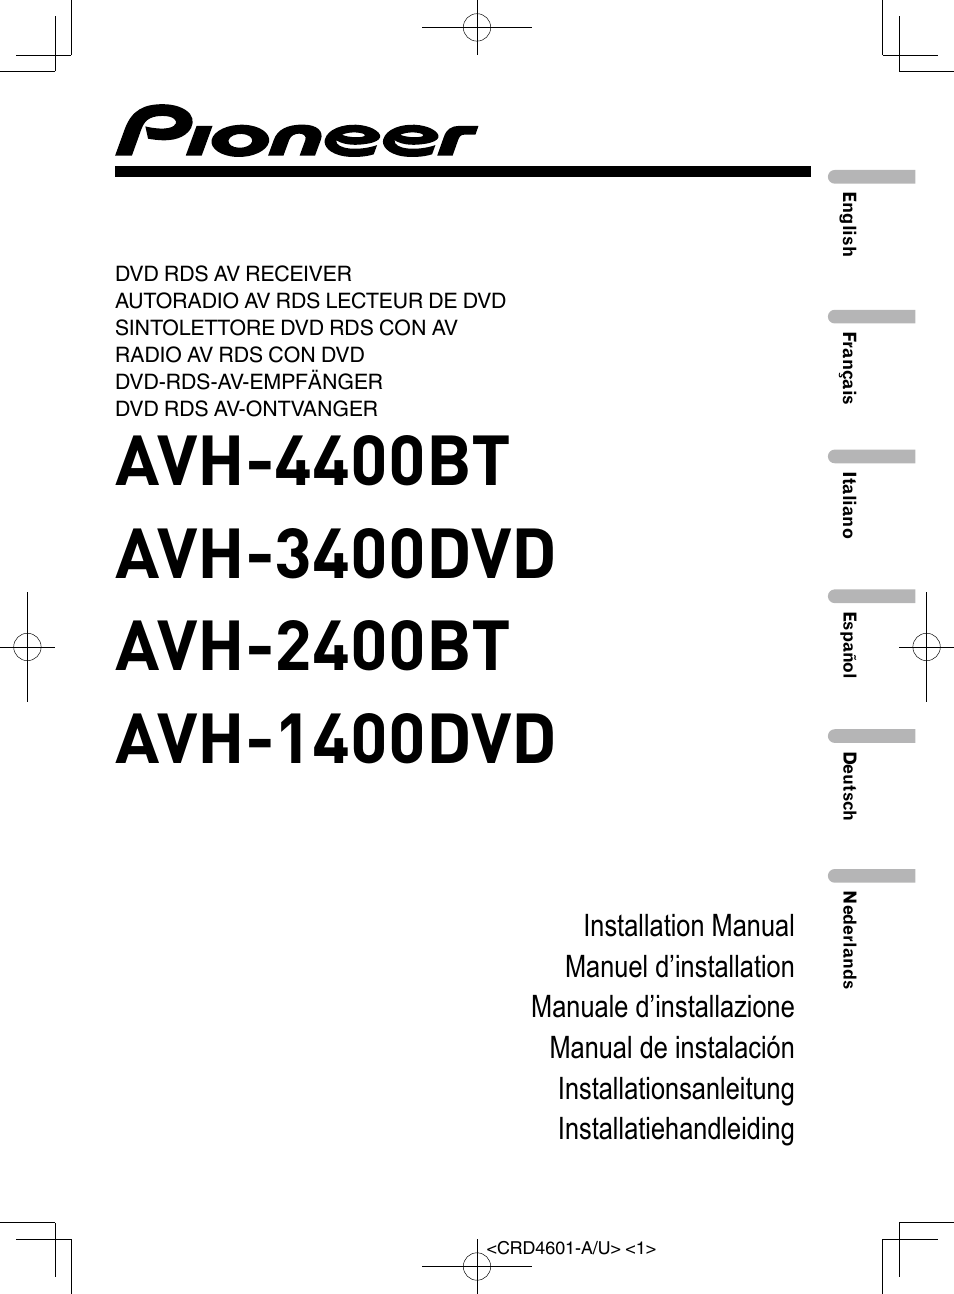 Pioneer AVH-1400DVD User Manual | 76 pages | Also for: AVH-3400DVD,  AVH-4400BT, AVH-2400BT